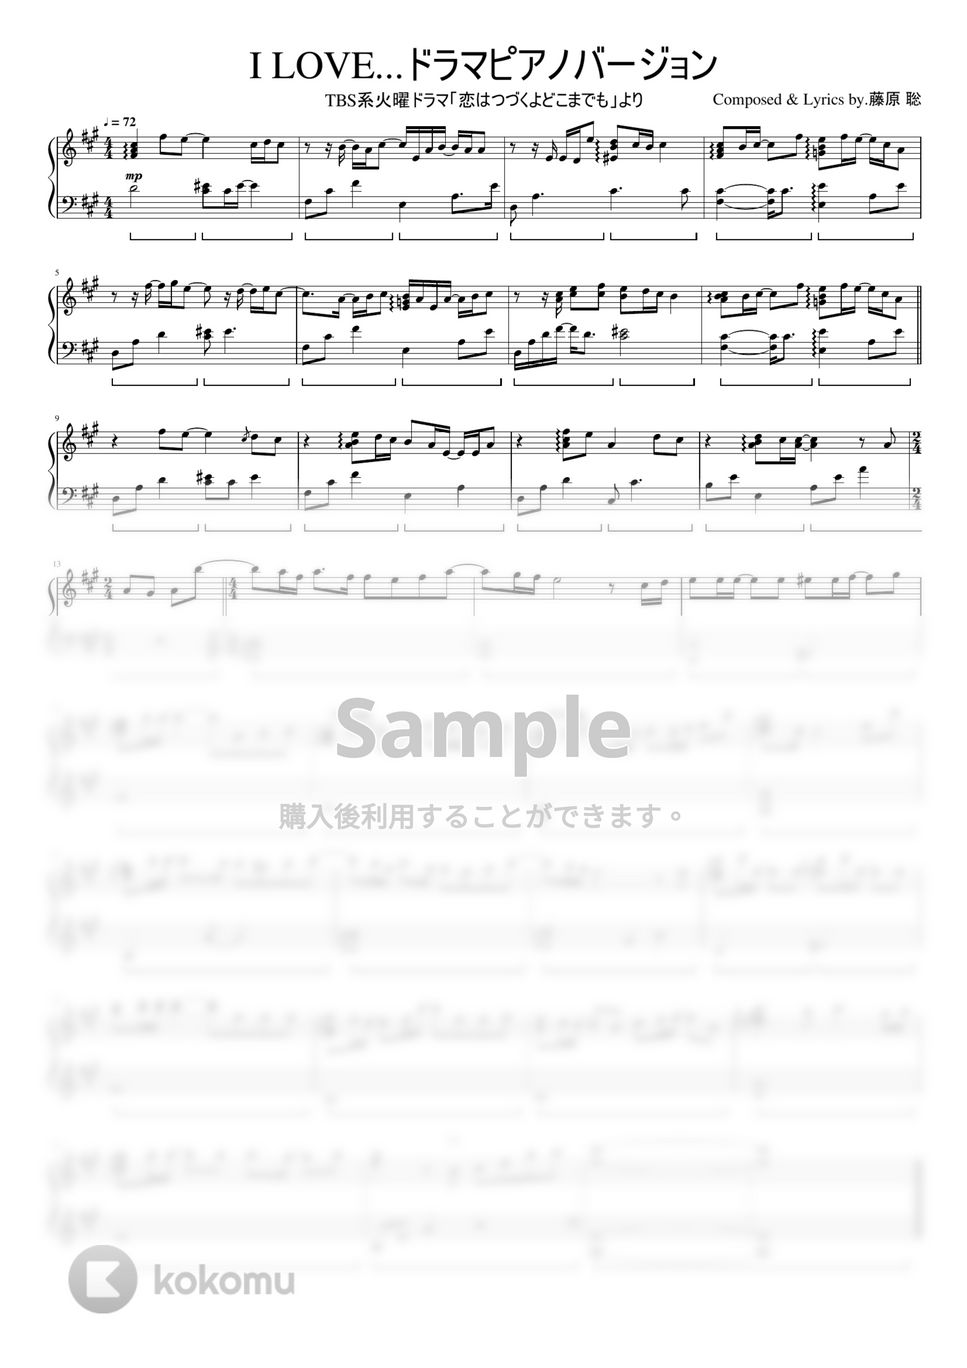 Official髭男dism - I LOVE...(ドラマピアノバージョン) (ドラマ「恋はつづくよどこまでも」) by ちゃんRINA。